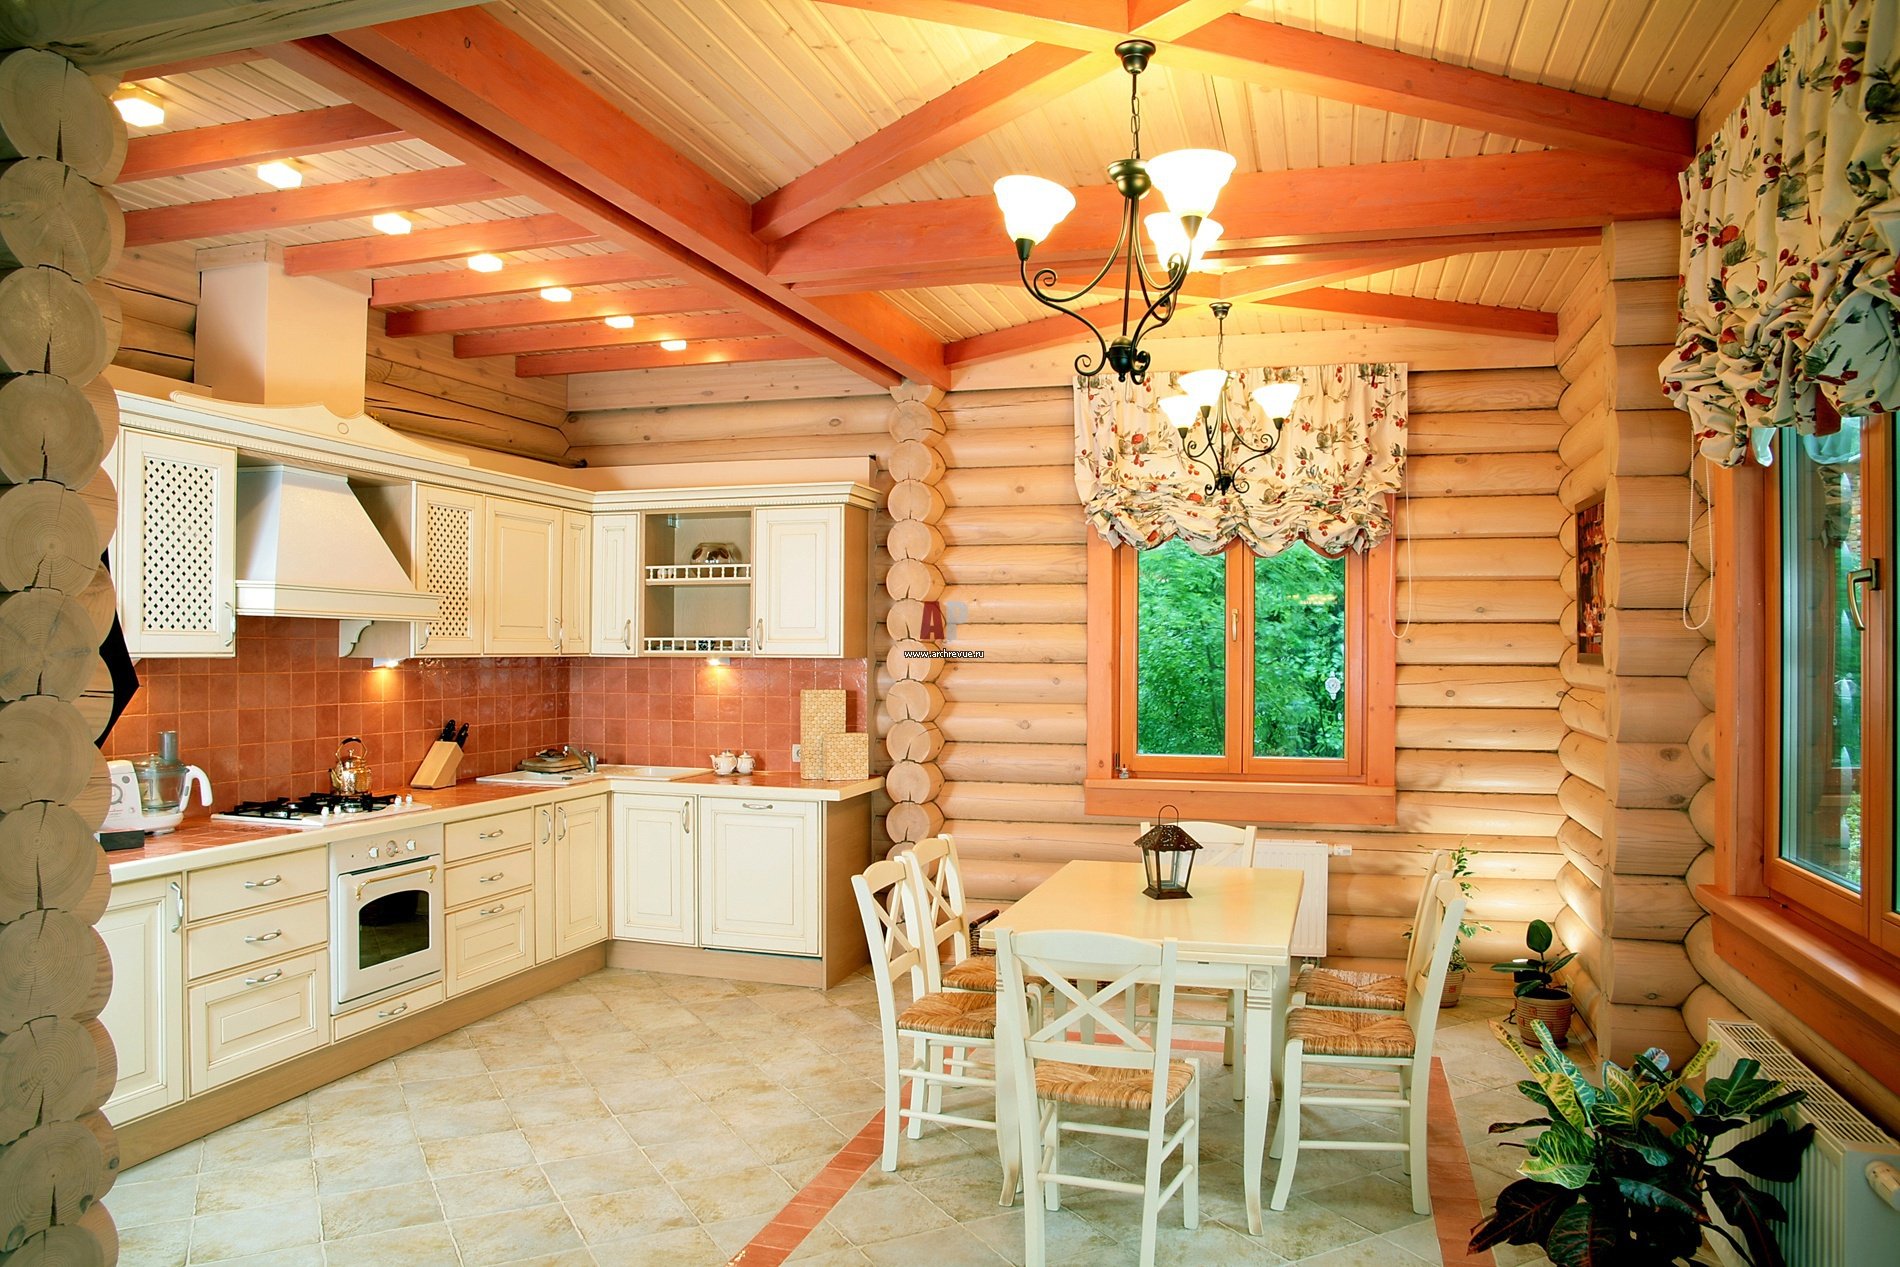 Современная кухня в деревянном доме фото » Картинки и фотографии .